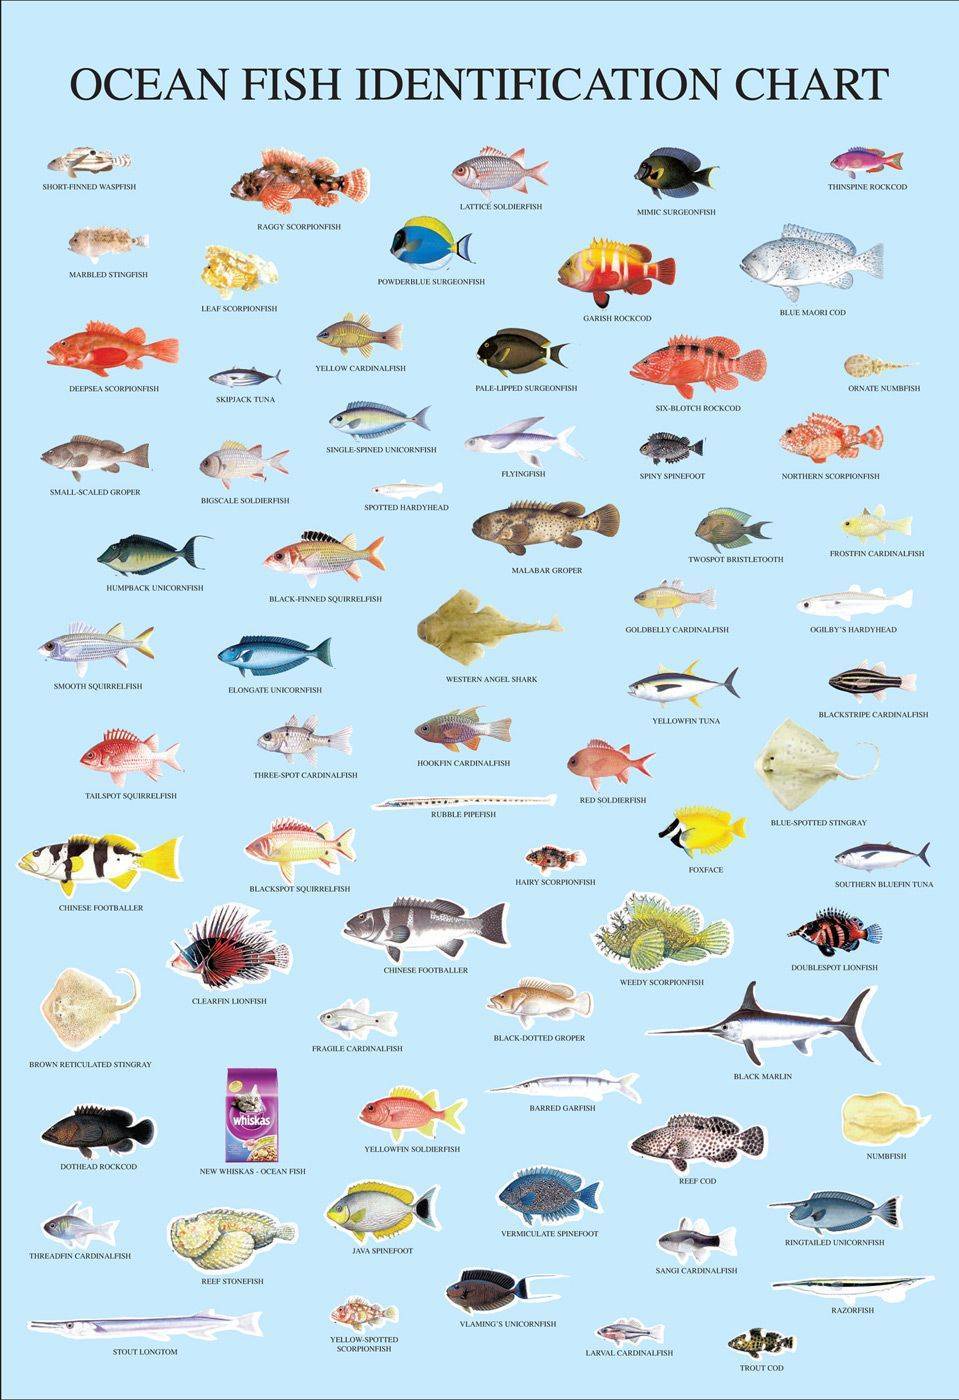 Морские рыбы: название, описание и фото самых популярных разновидностей обитателей морских глубин